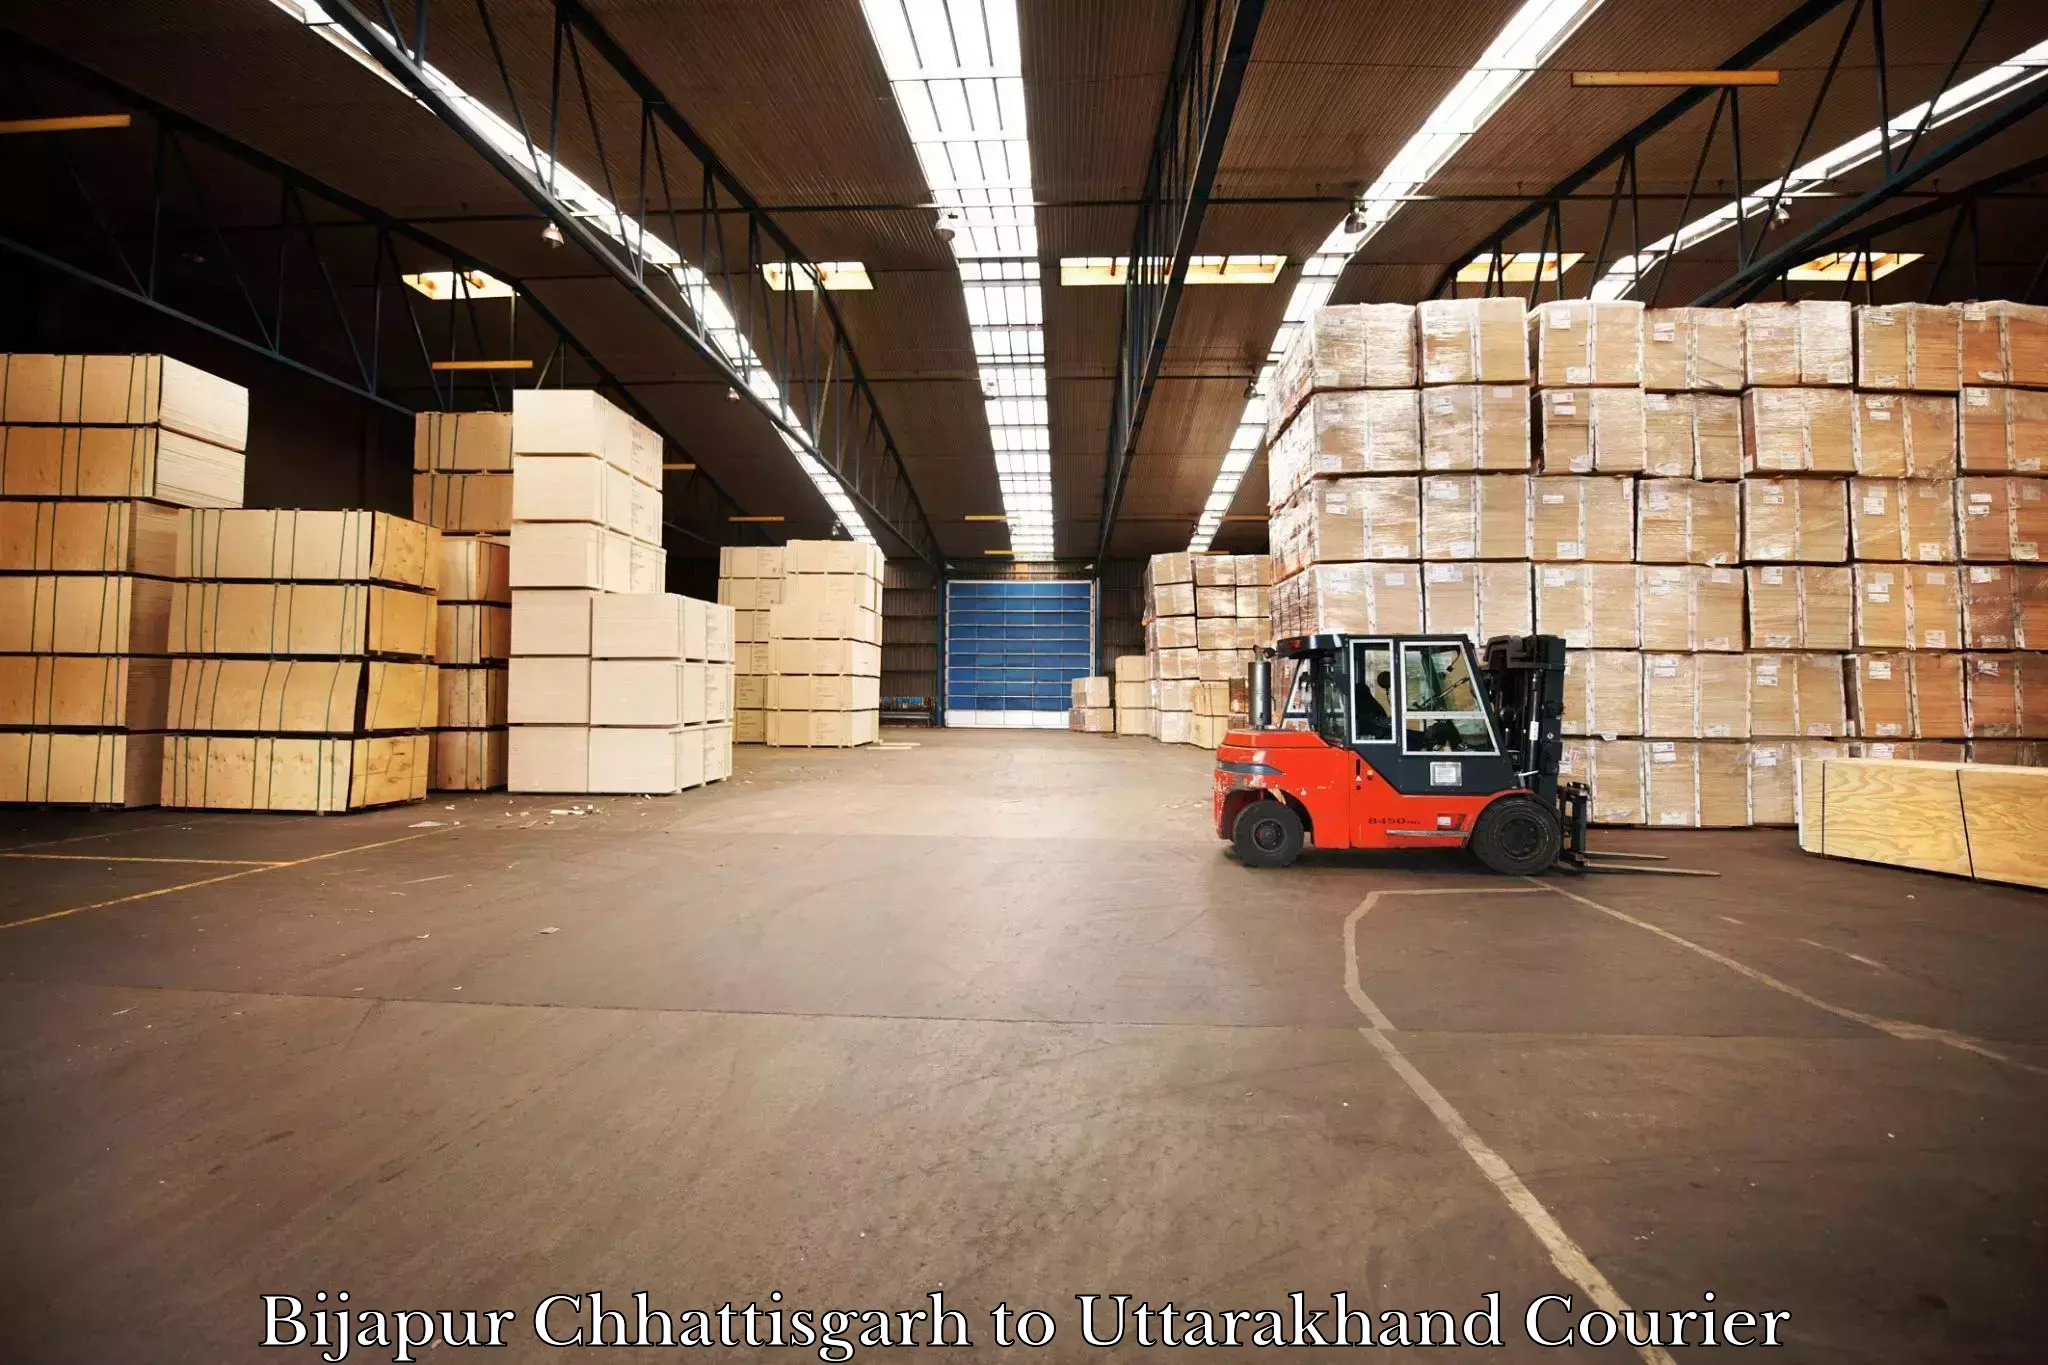 Cargo delivery service Bijapur Chhattisgarh to IIT Roorkee